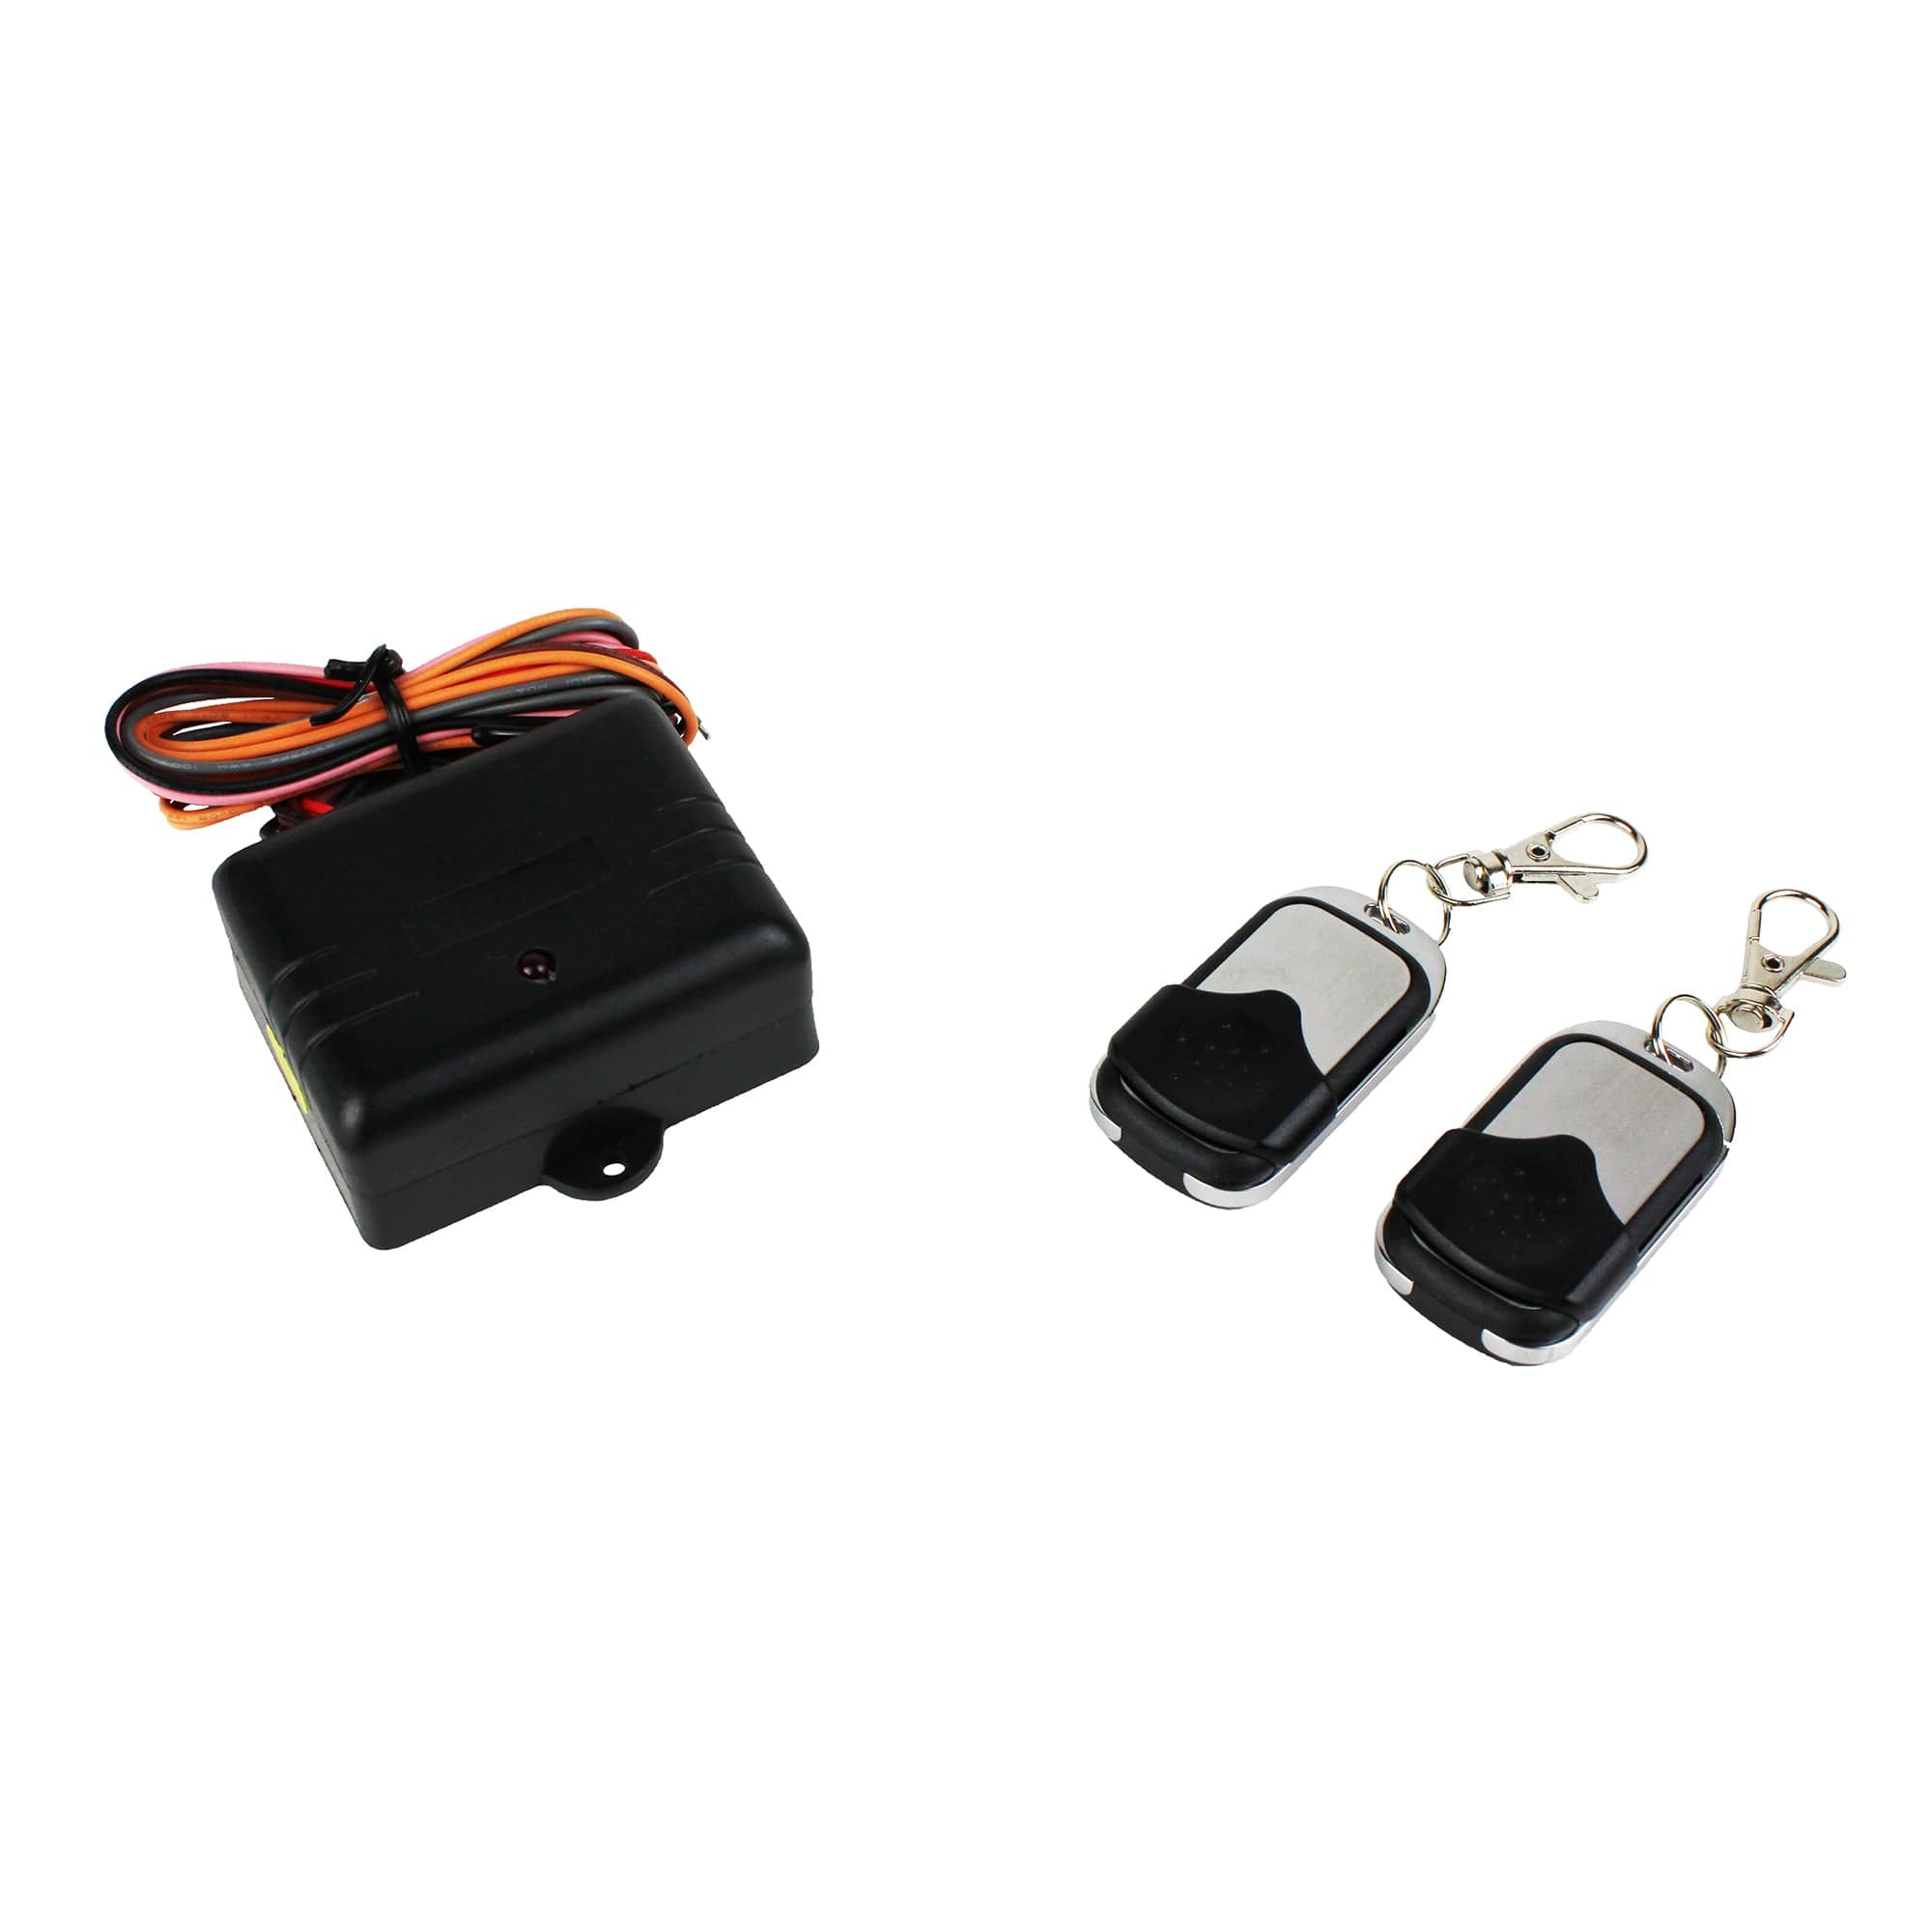 Czone 80-911-0045-00 Power Products Battery Switch Wireless Remote Key Kit